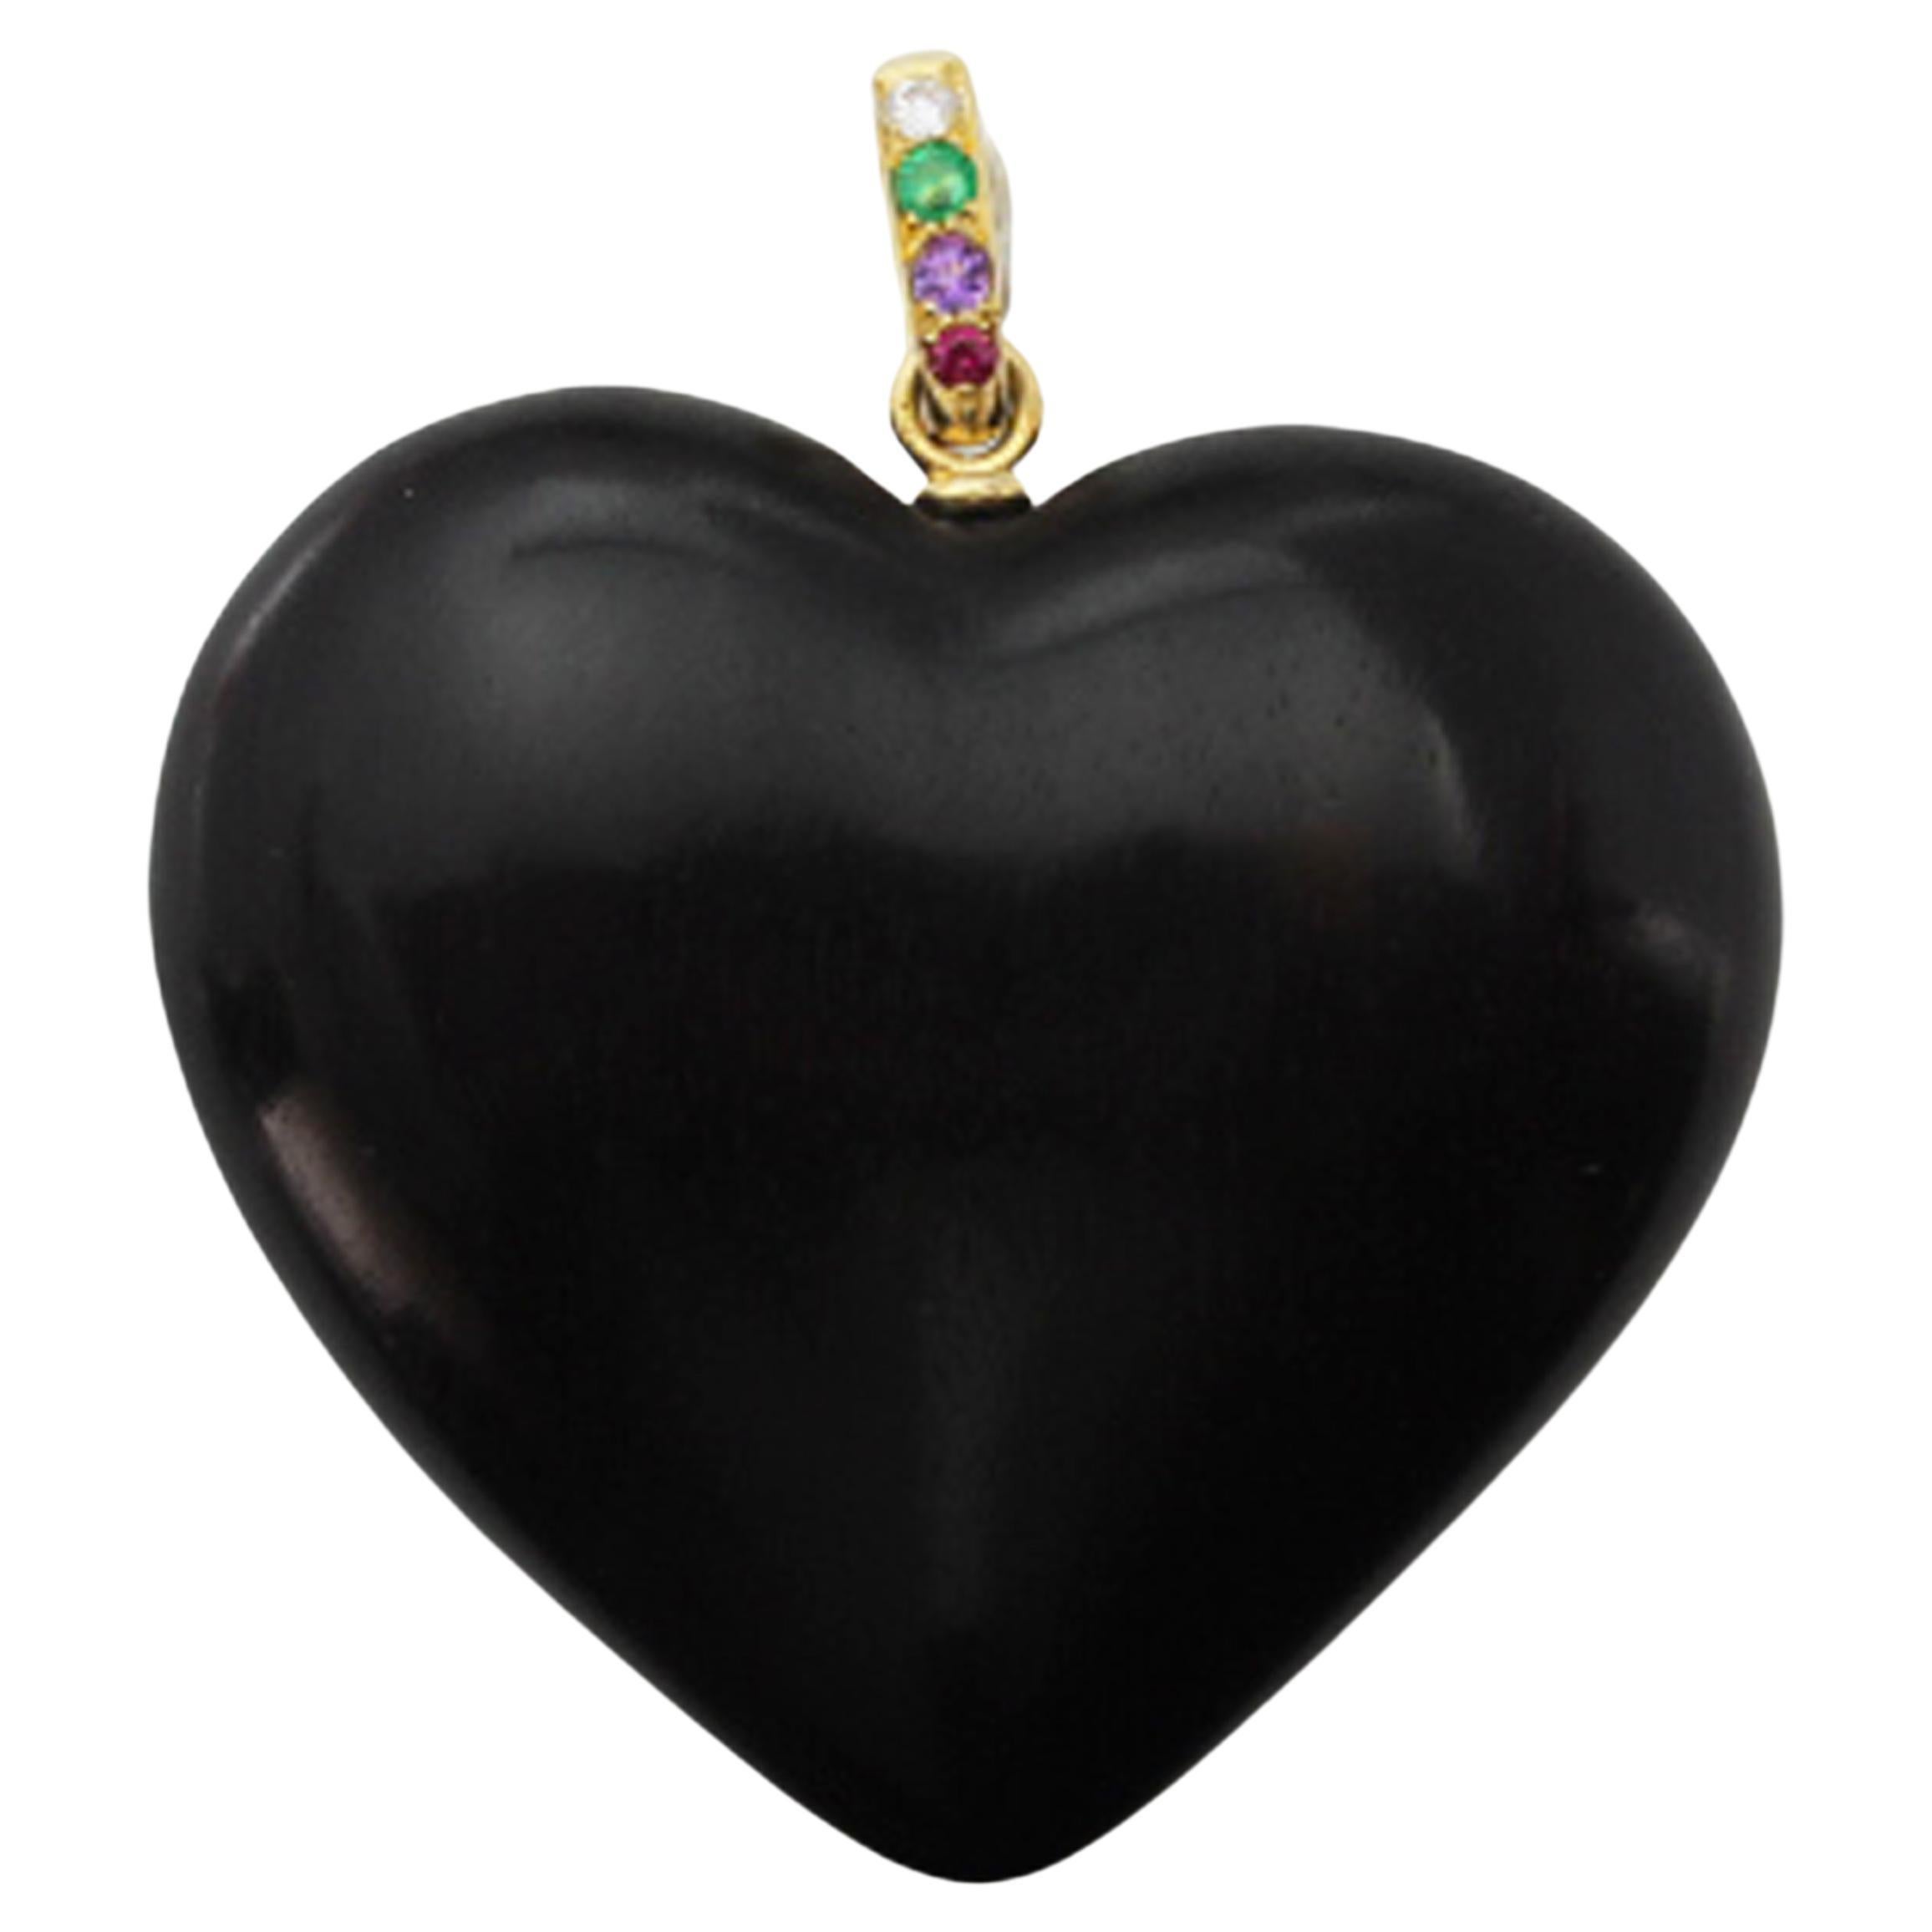 Dear Diamond Emerald Amethyst Ruby Black Wood Topaz Heart Pendant 18 Kt Gold For Sale